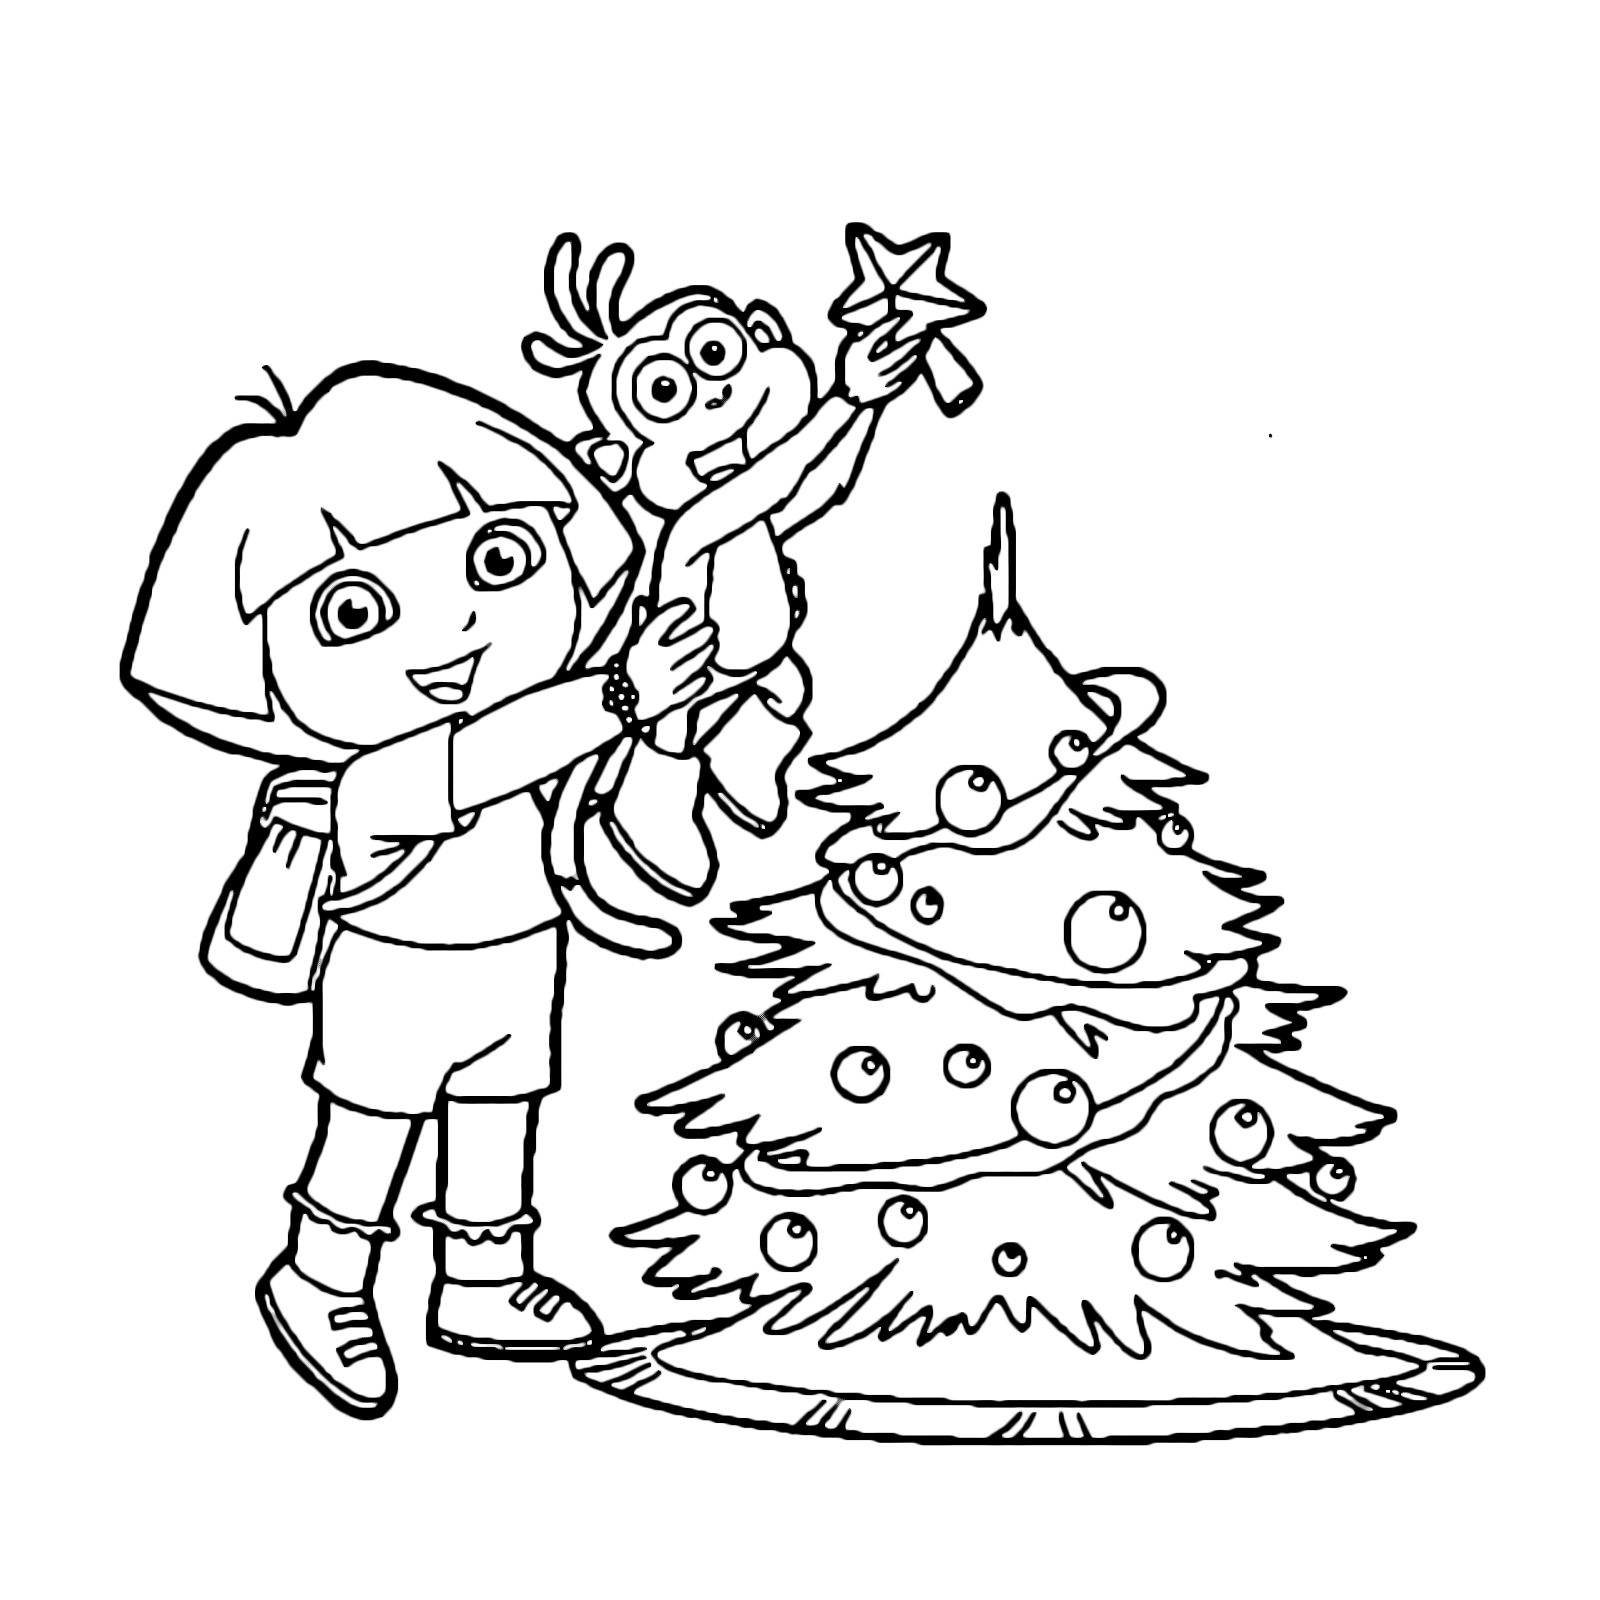 Dora l'esploratrice - Dora e Boots preparano l'albero di Natale